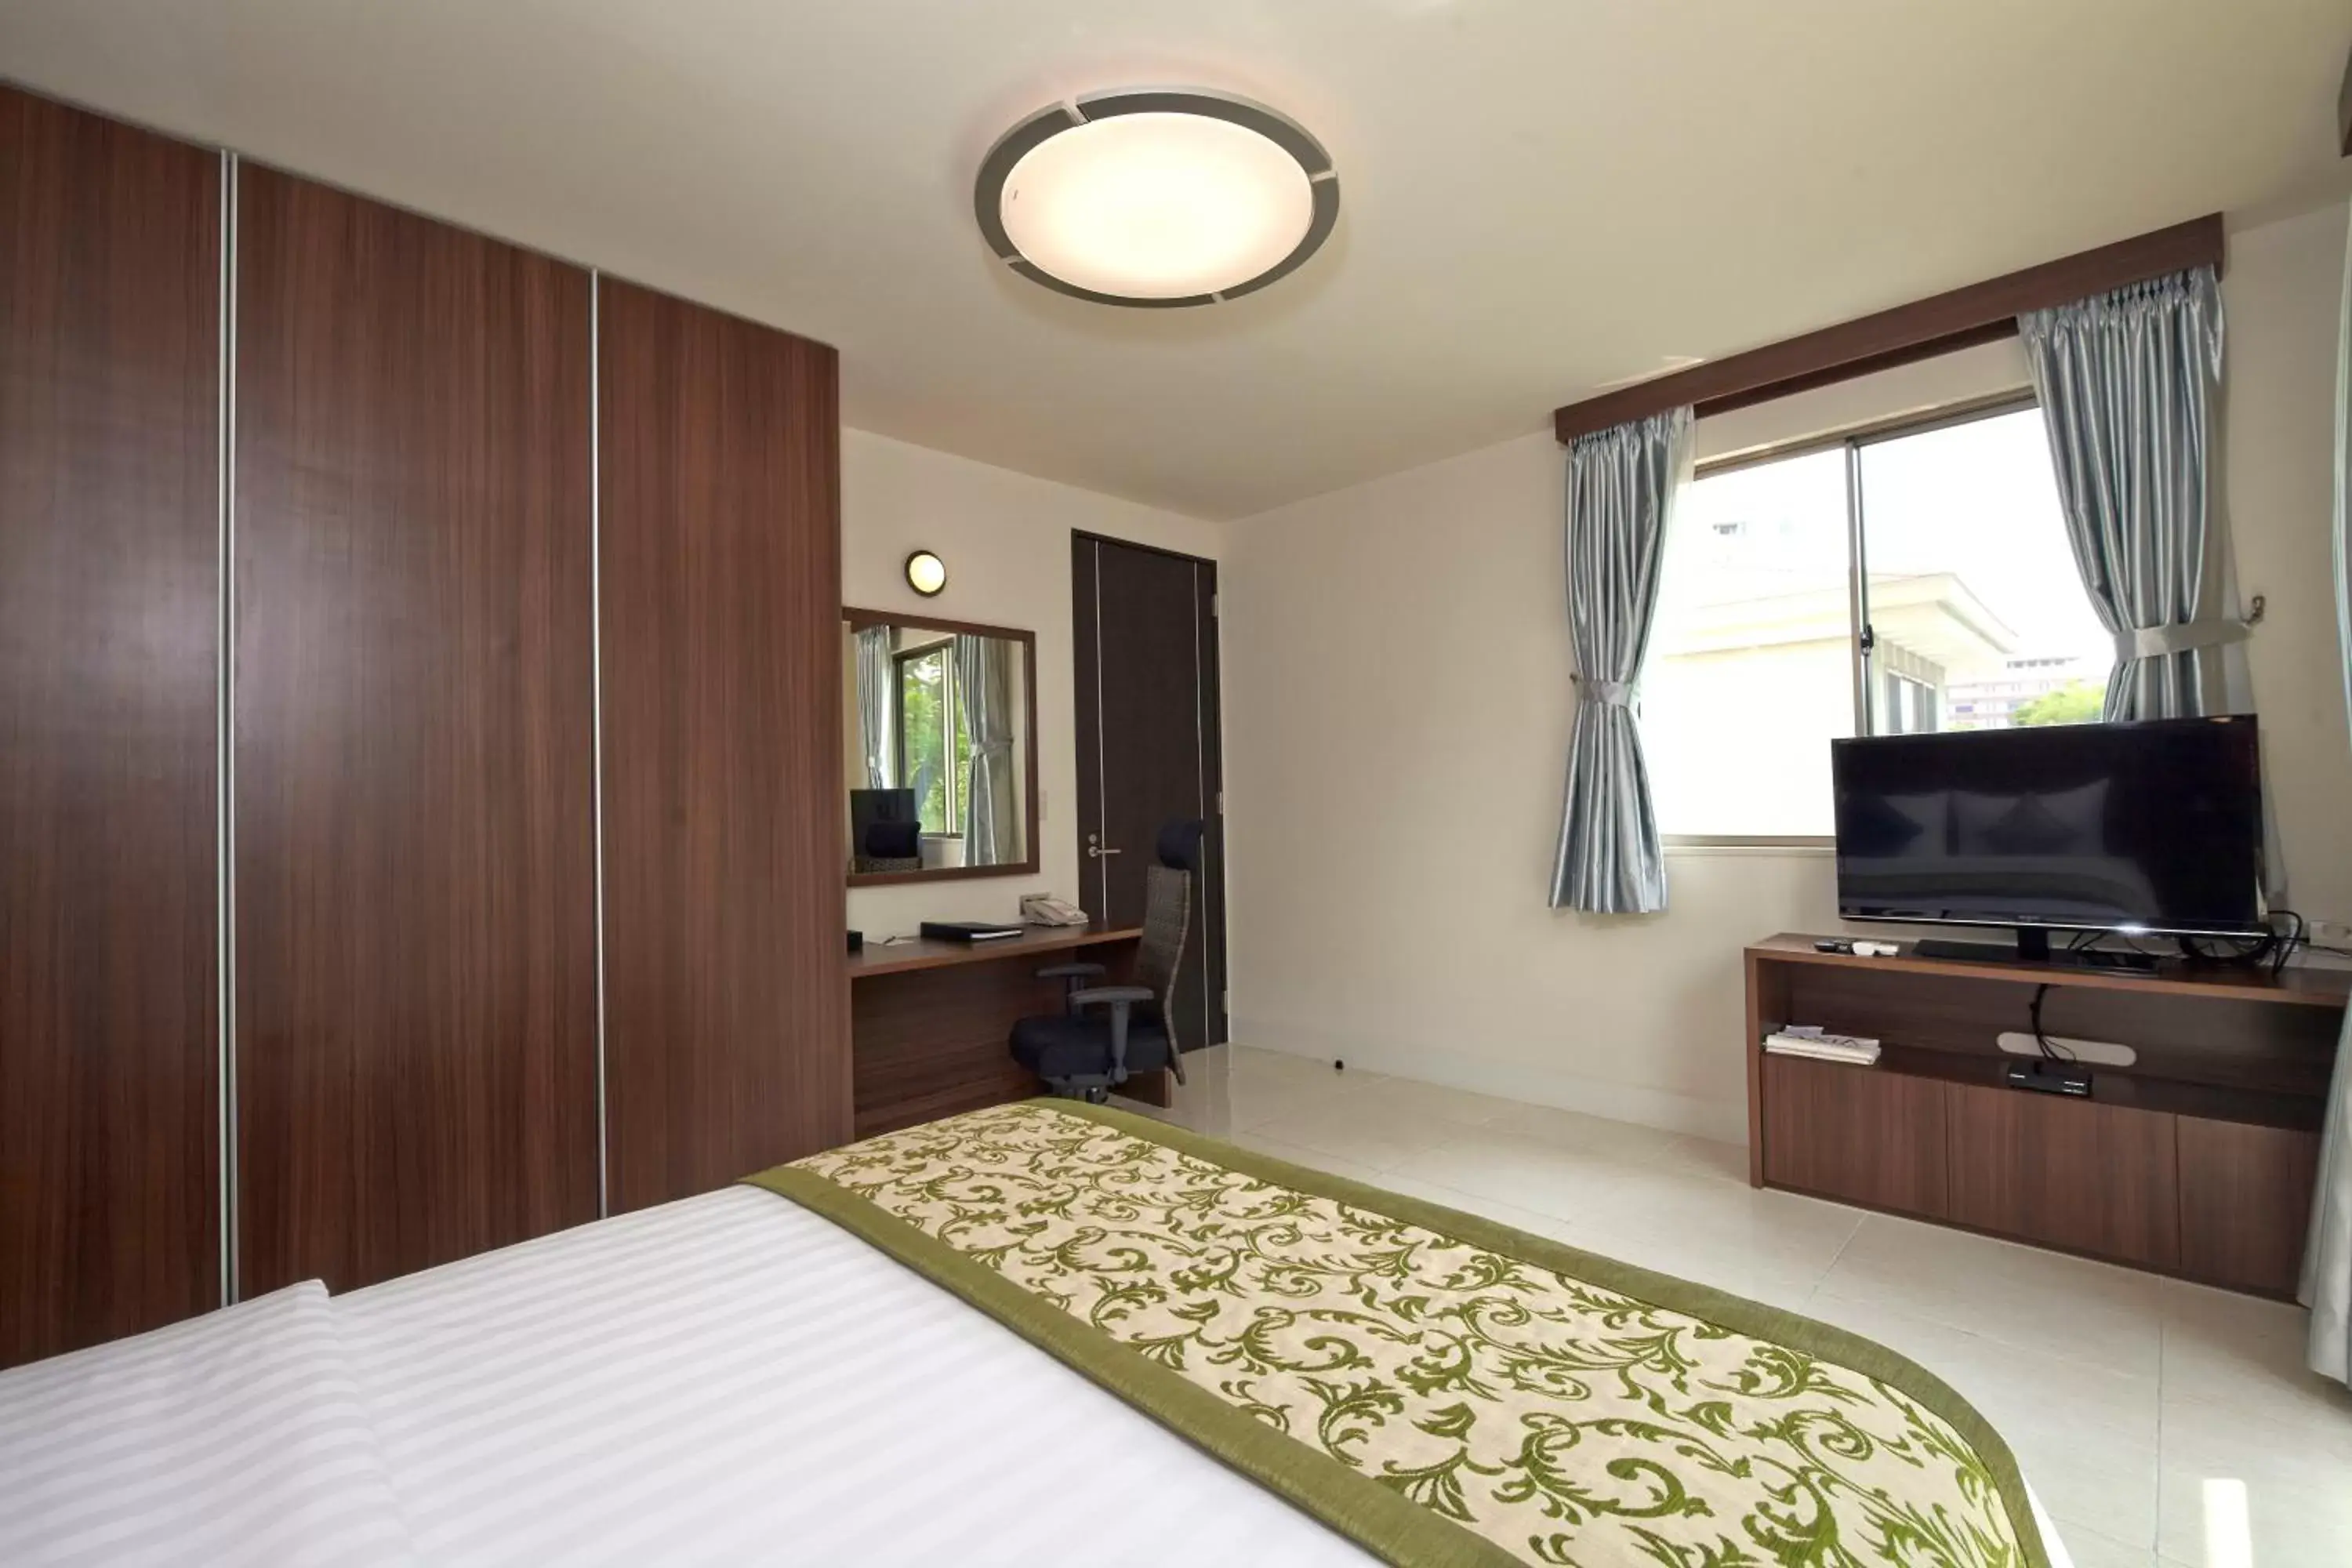 Bedroom, TV/Entertainment Center in Axia South Cikarang Service Apartment